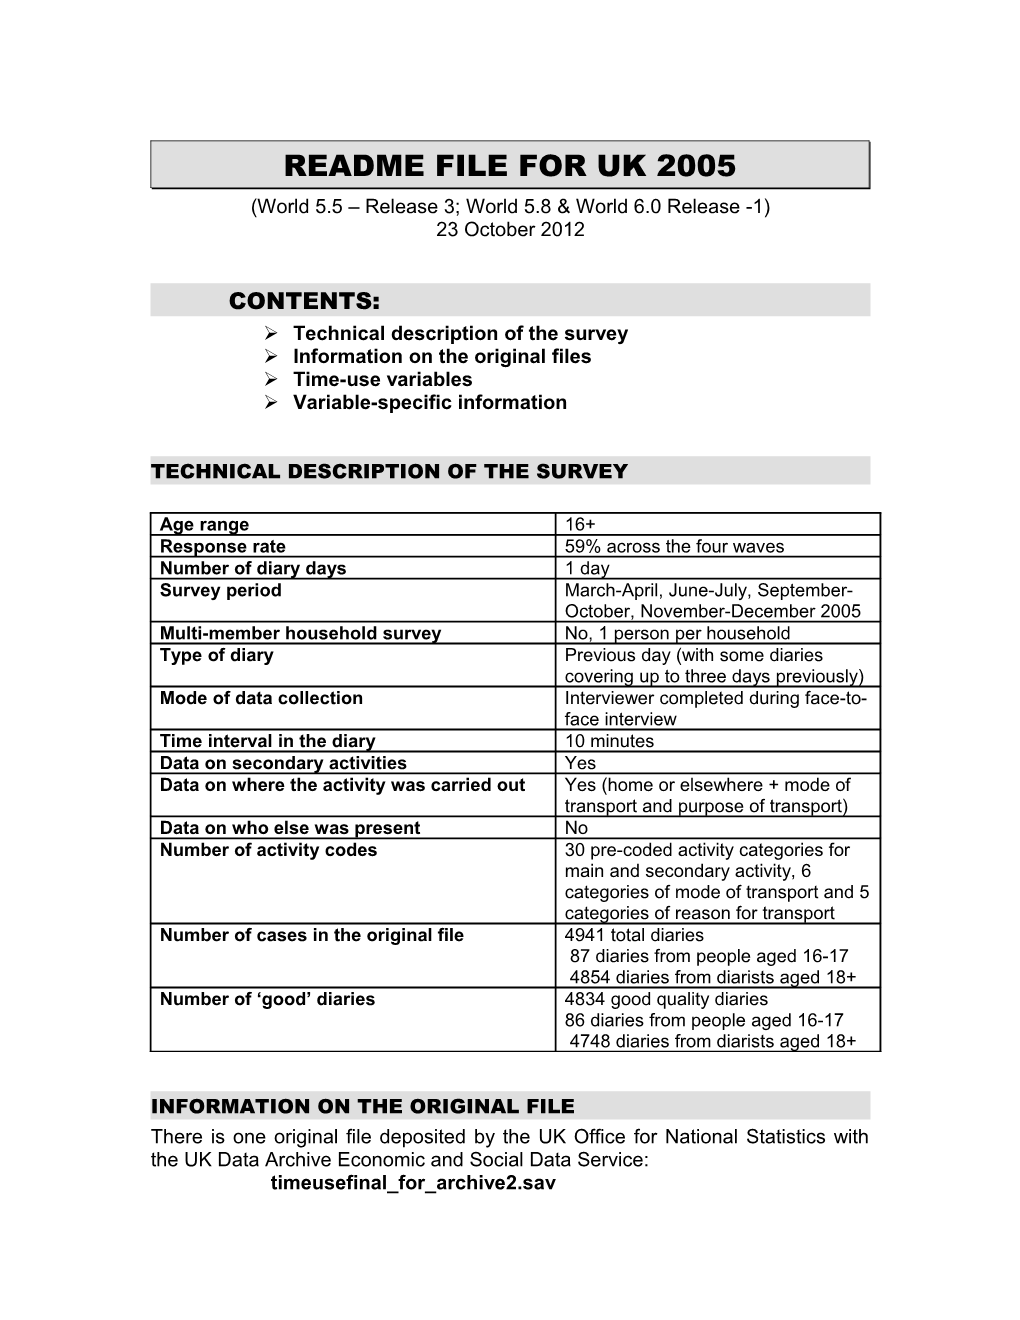 Readme File for UK 2005